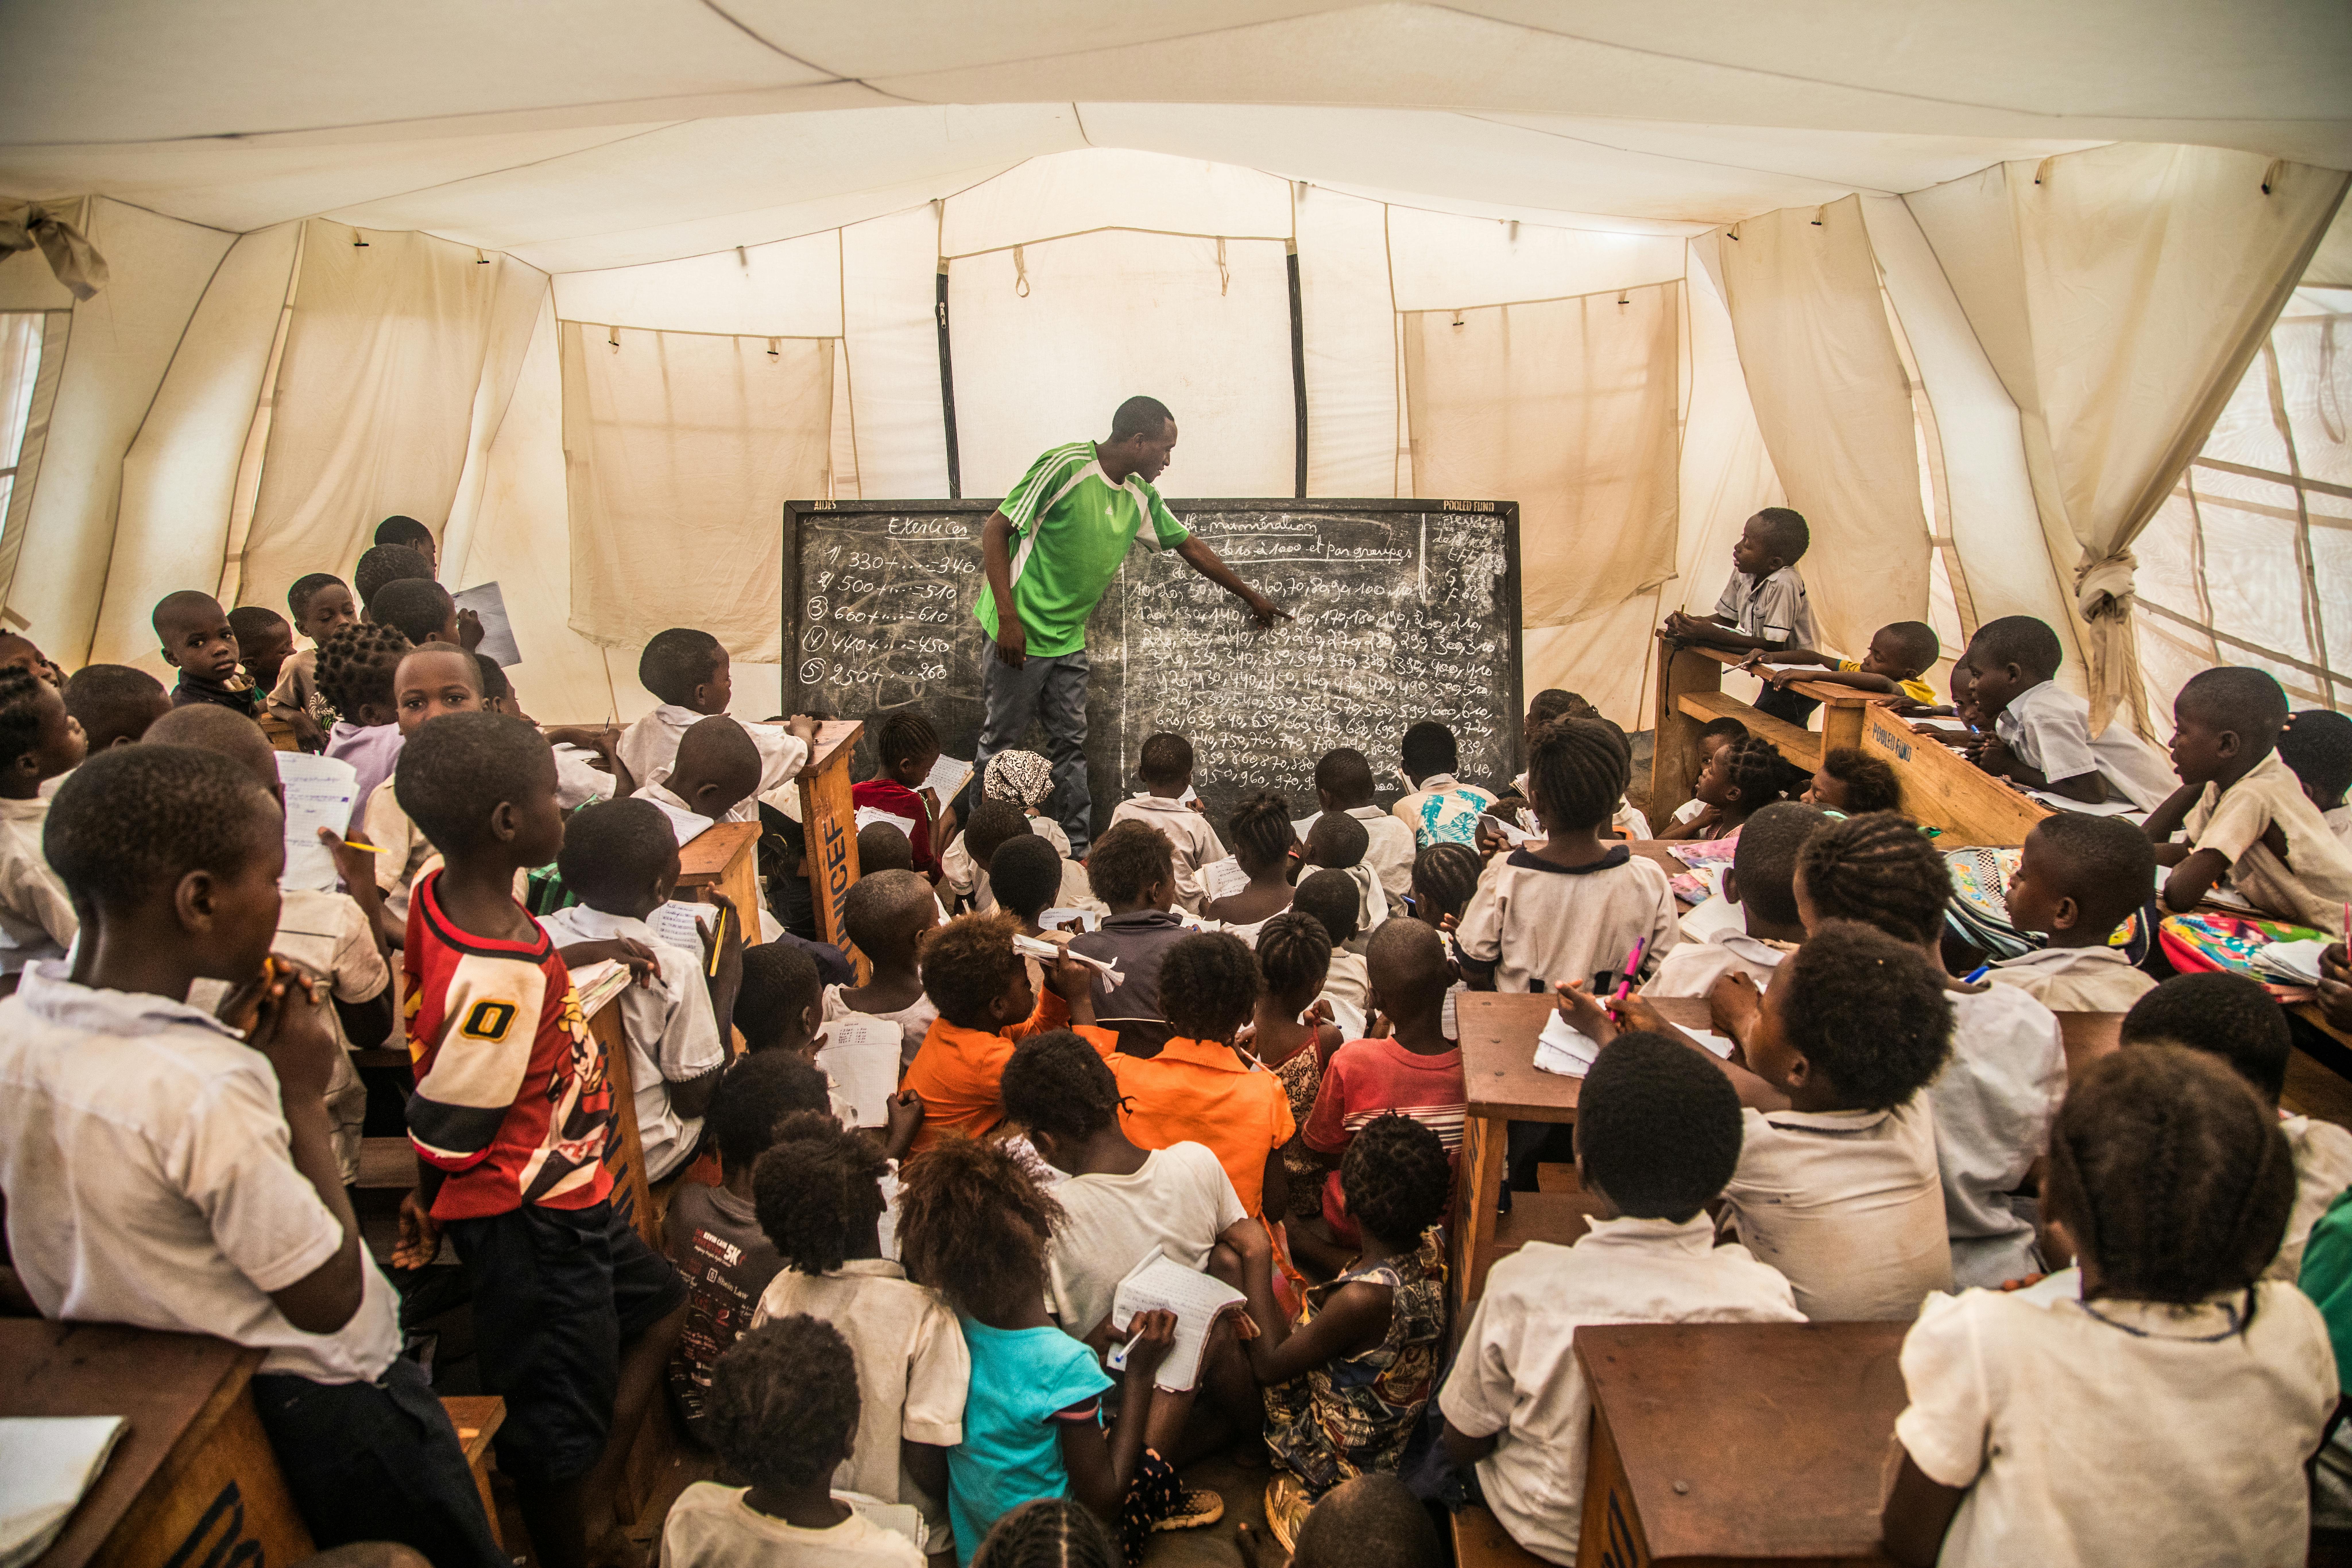 Repubblica Democratica del Congo: Pierre Bilolo insegna lettura di base a Tshikapa, Kasai-Provincia occidentale. Da quando è scoppiata la crisi i suoi studenti sono moltiplicati e non ci sono abbastanza banchi nè sedie o altro materiale scolastico